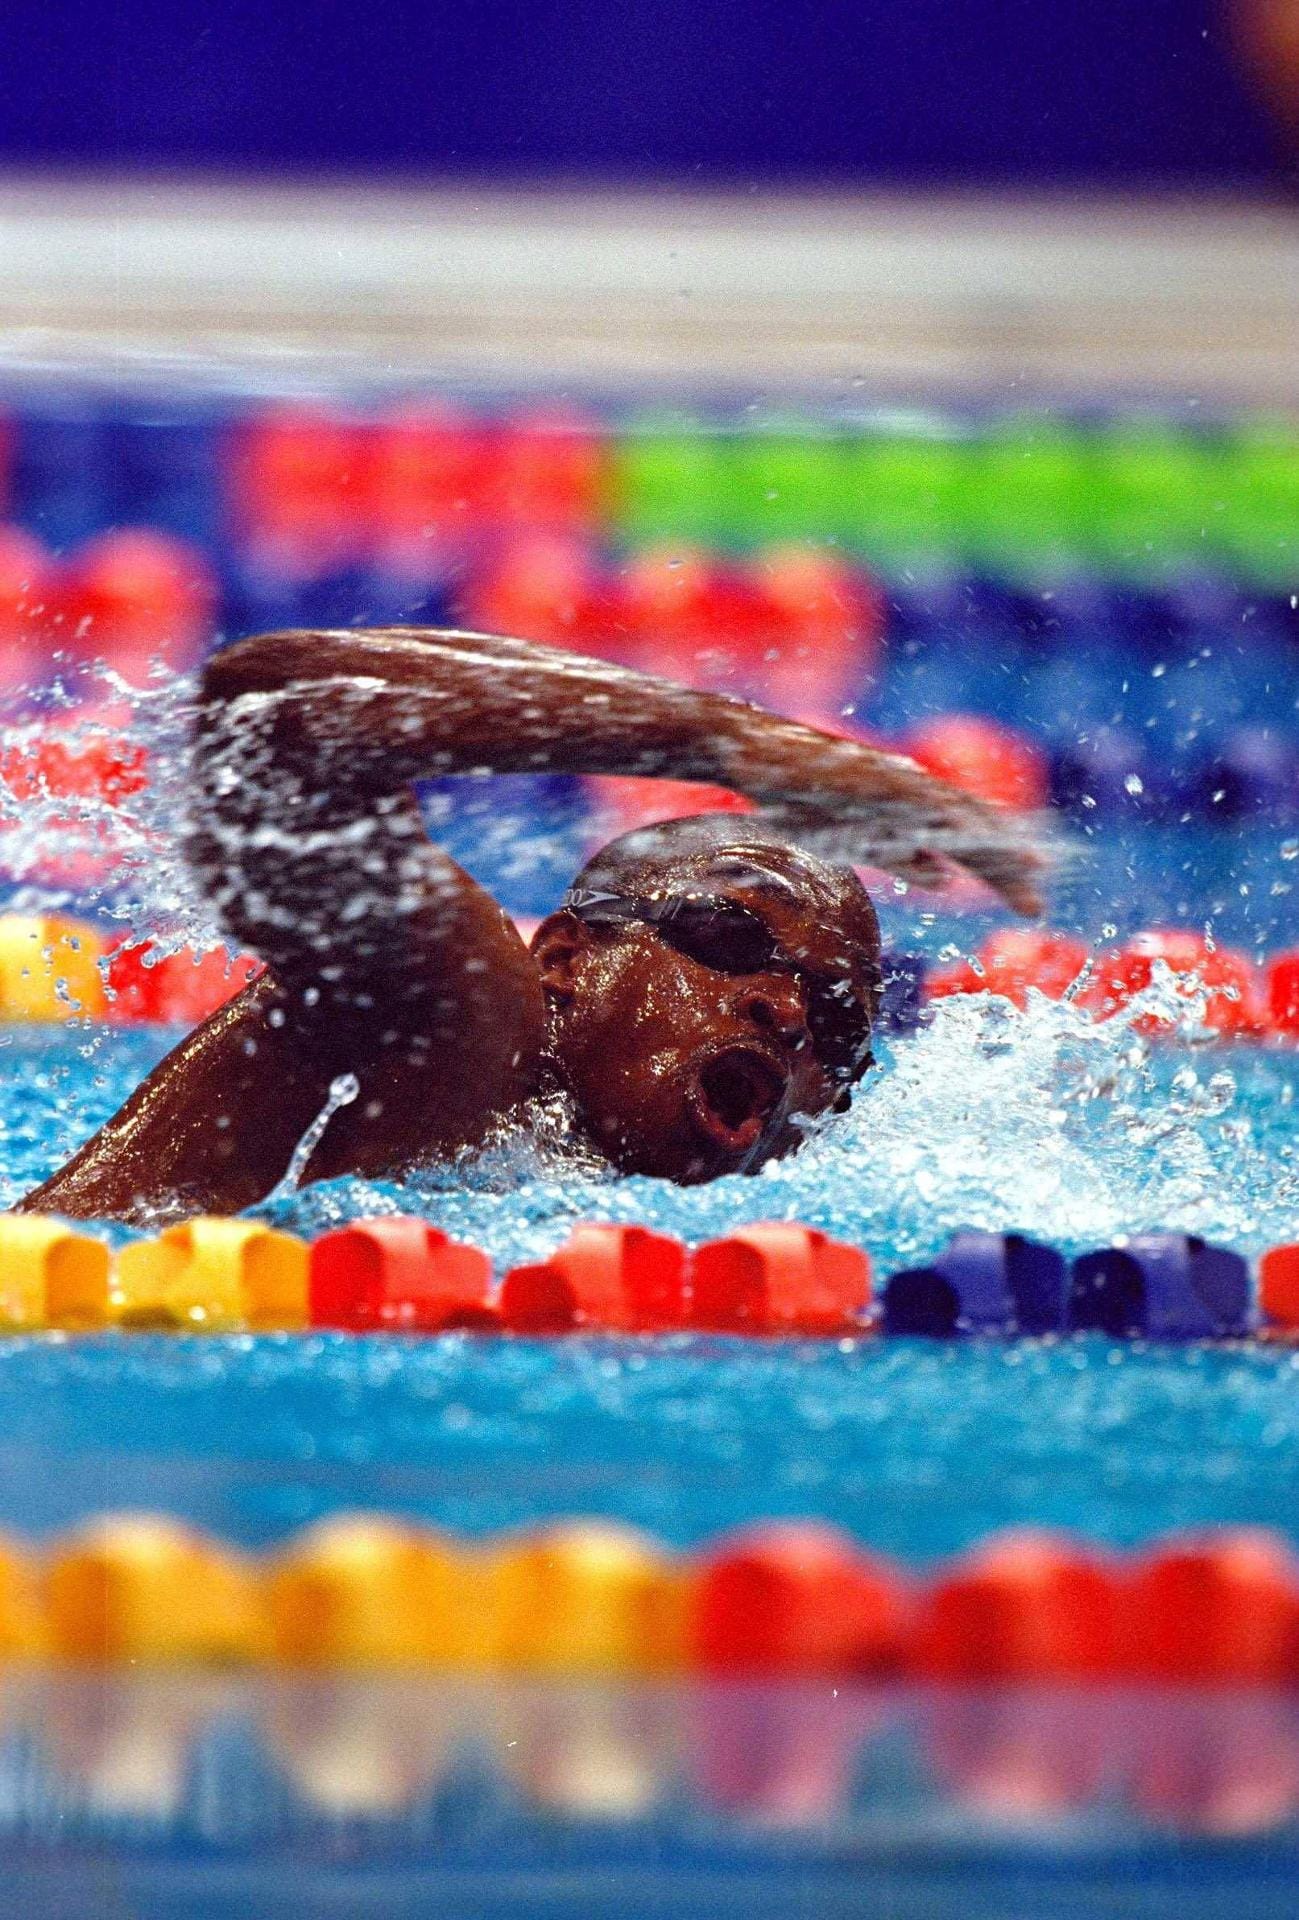 Eric Moussambani brauchte 2000 in Sydney für die 100 Meter Freistil 1:52,72 Minuten. Damit lag er über der Zeit des Weltrekords für die doppelte Distanz. Aber der Schwimmer aus Äquatorialguinea war trotzdem einer der Helden der Spiele. Ganz allein – die beiden anderen Teilnehmer des Vorlaufs waren wegen Frühstarts disqualifiziert worden - hatte er sich durchs Becken gekämpft. Schwimmen hatte "Eric der Aal" erst im Vorfeld von Olympia gelernt.